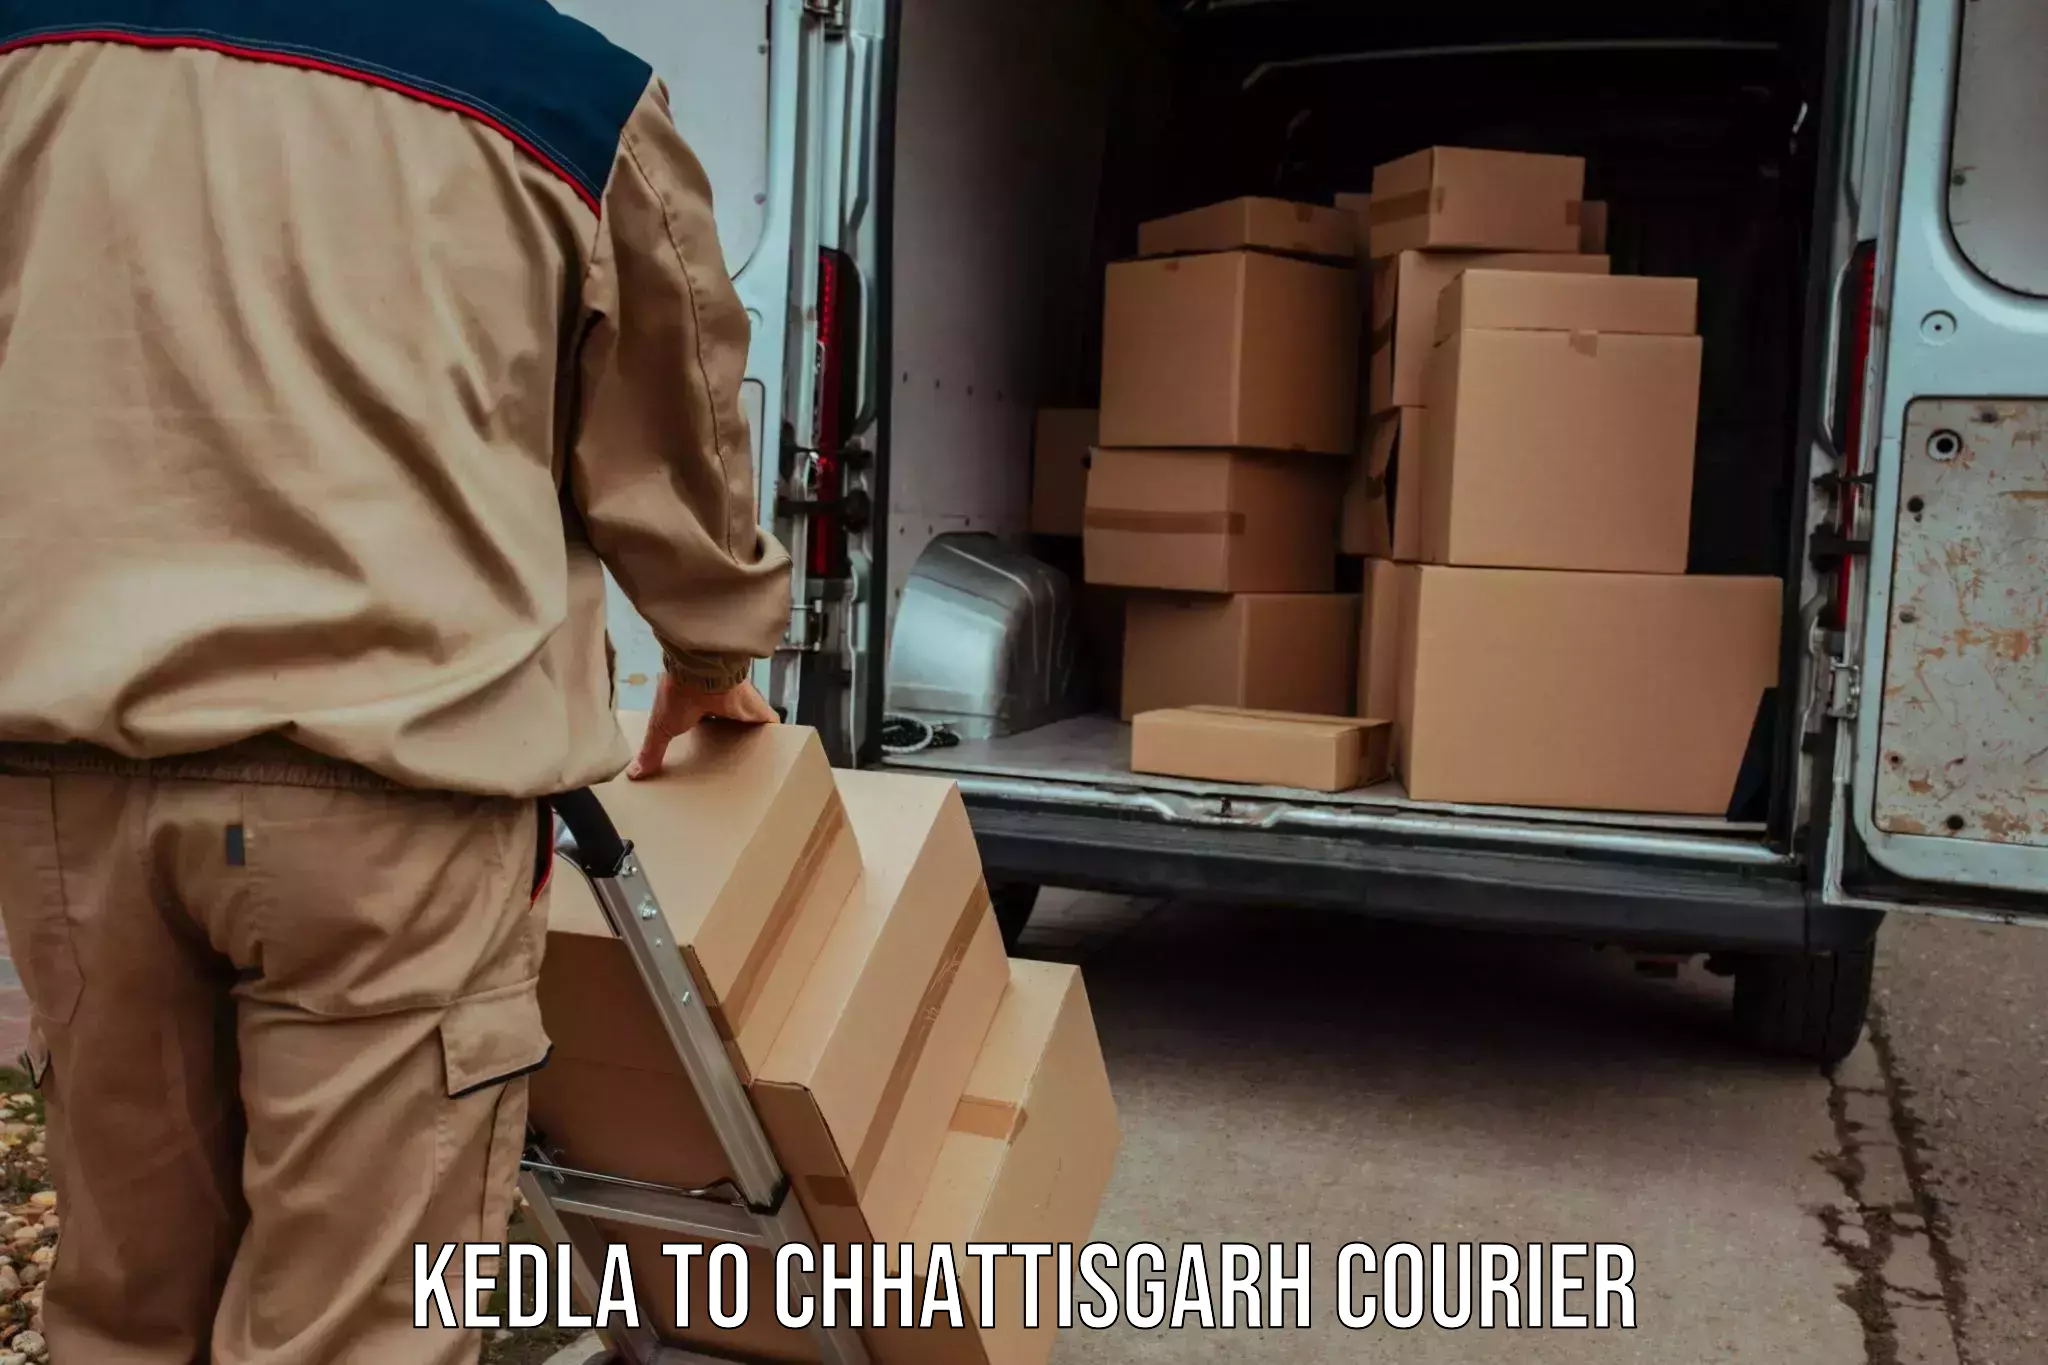 Global courier networks Kedla to Wadrafnagar